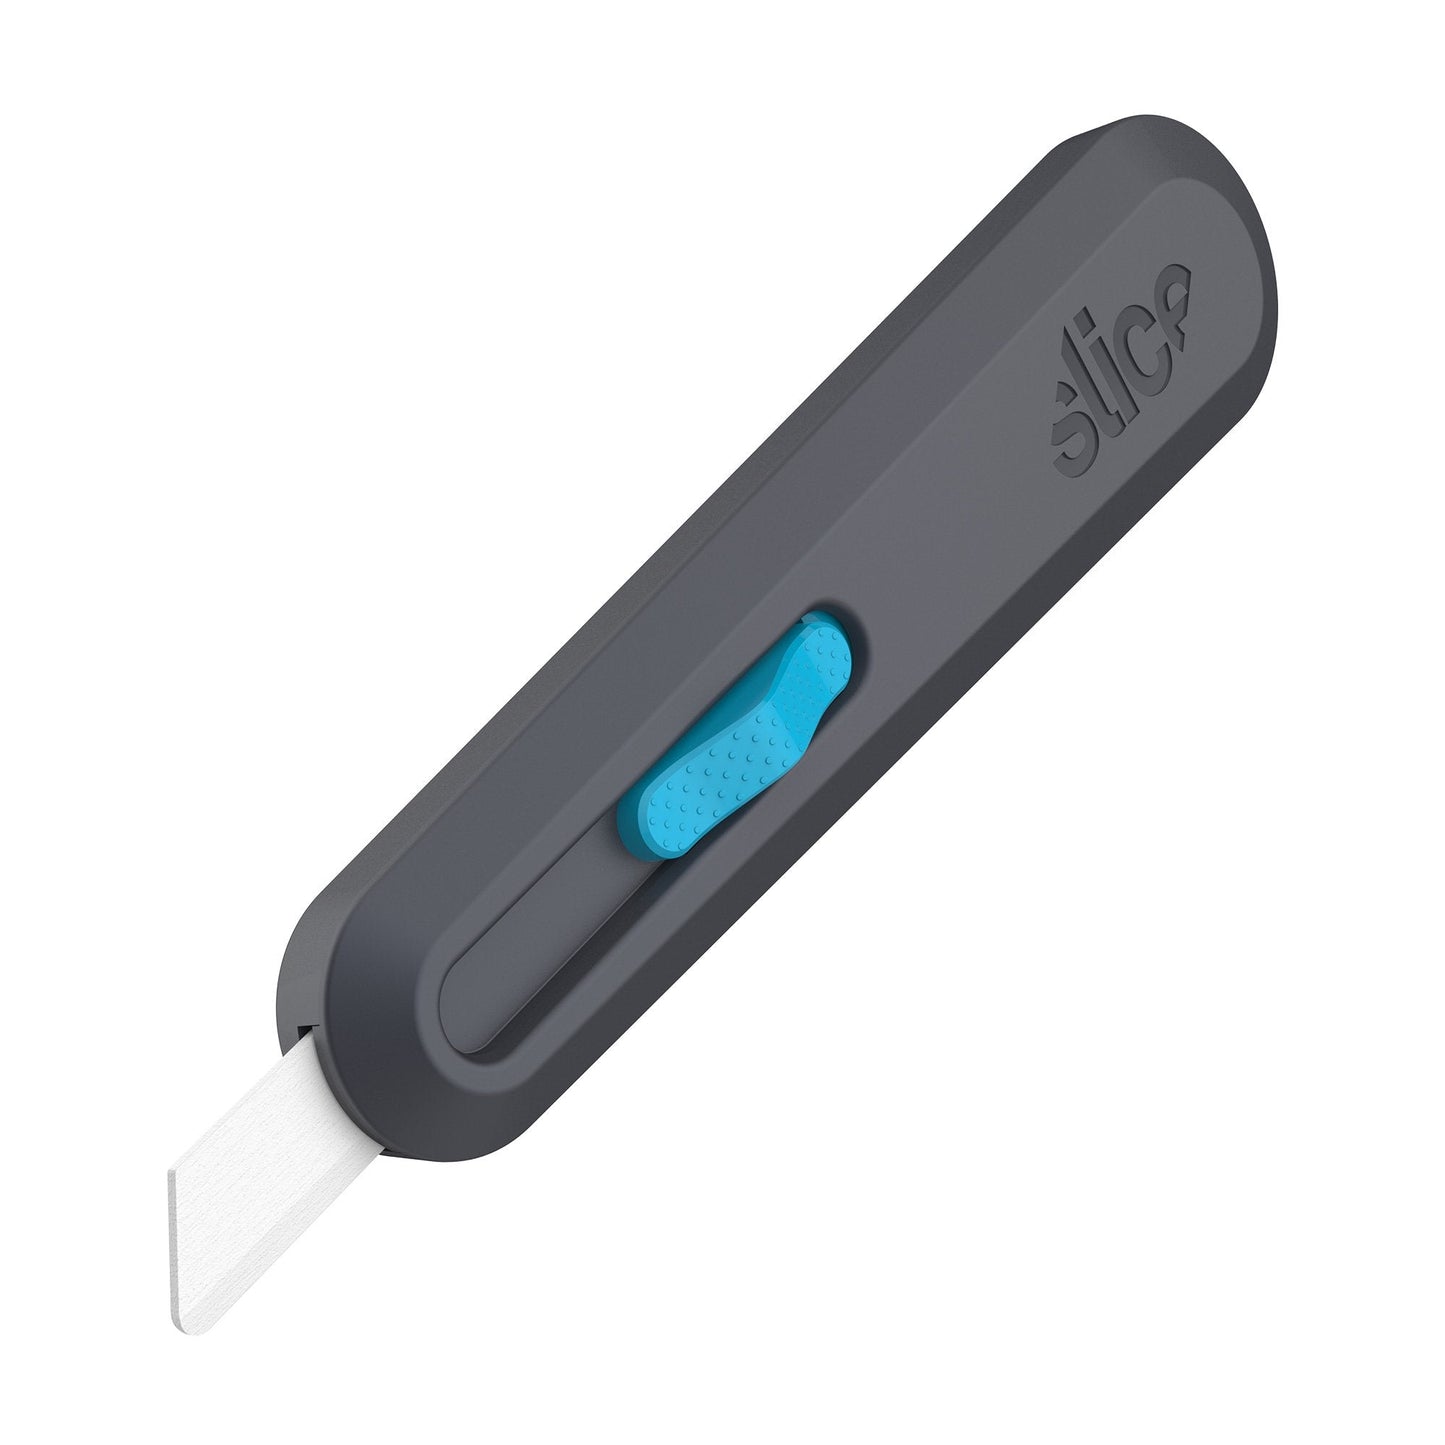 Smart-Retracting Utility Knife